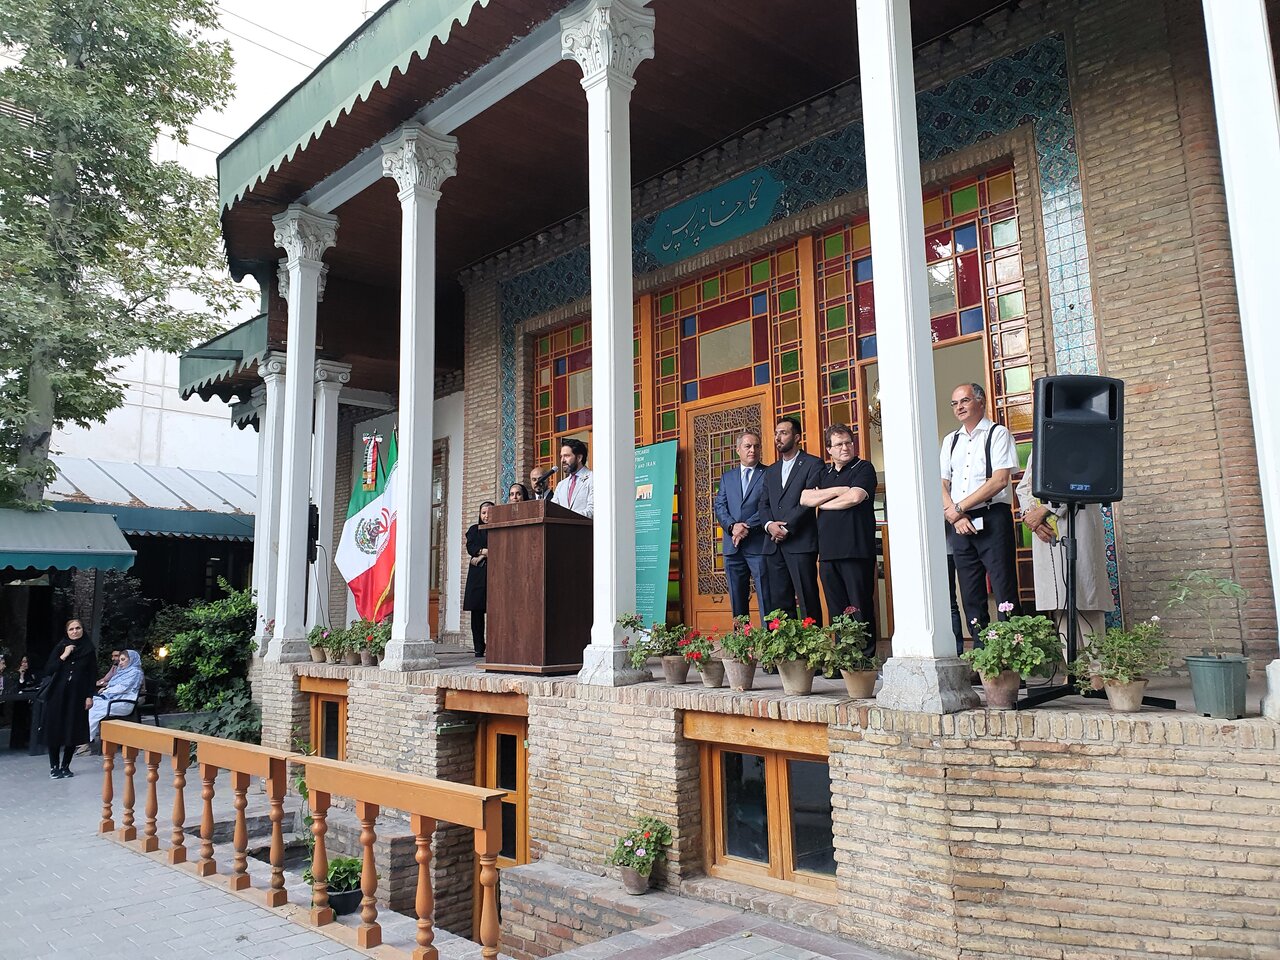 نمایش اشتراکات فرهنگی ایران و مکزیک در قالب عکس